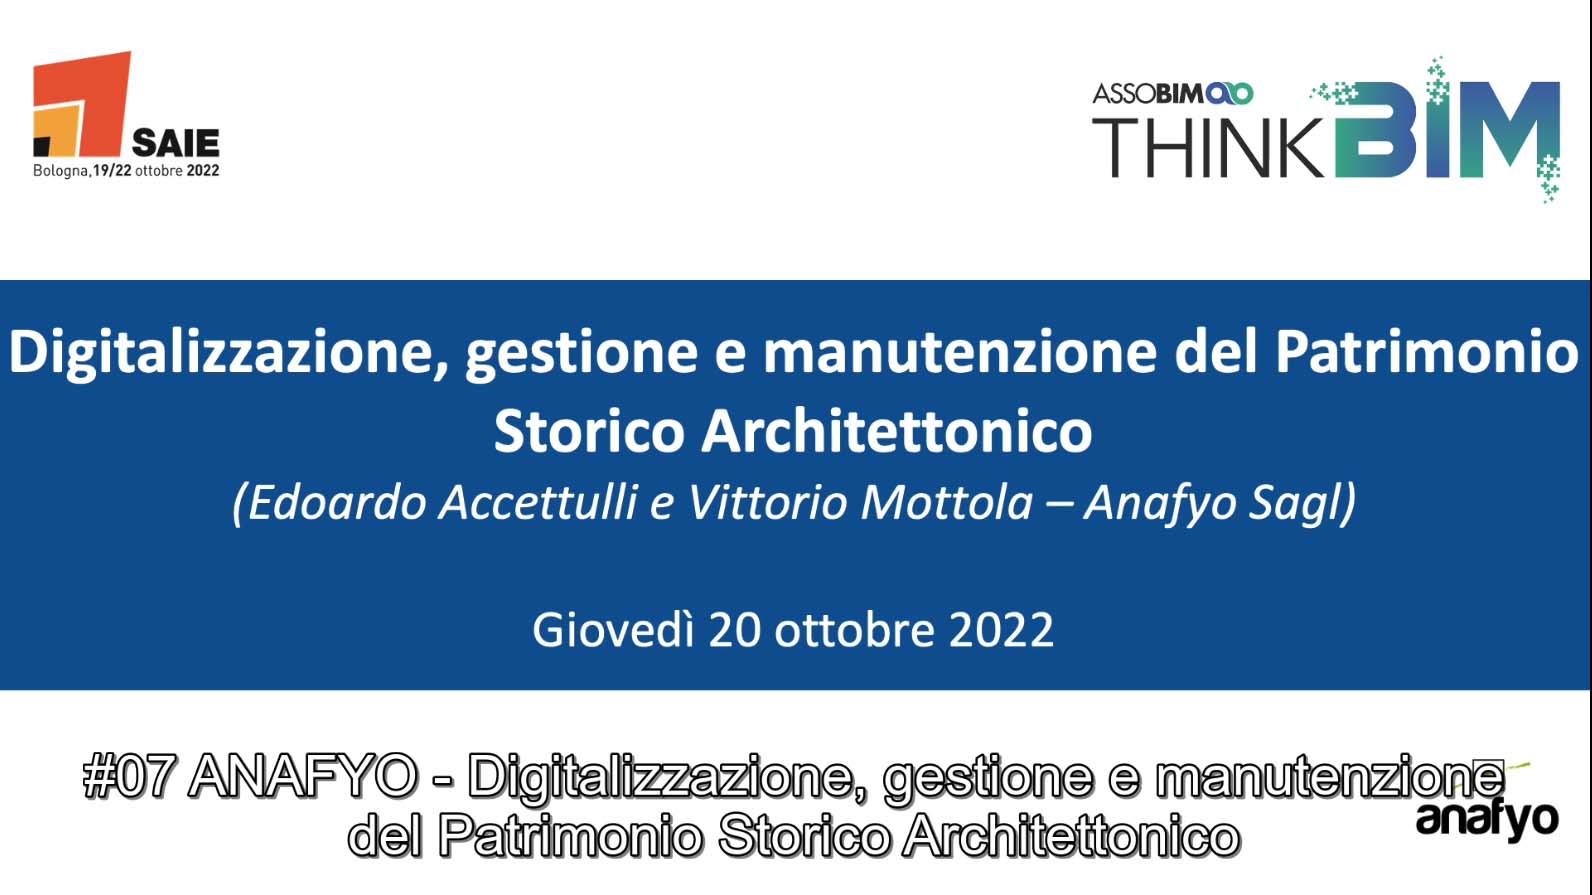 SAIE 2022 – Digitalizzazione, gestione e manutenzione del Patrimonio Storico Architettonico